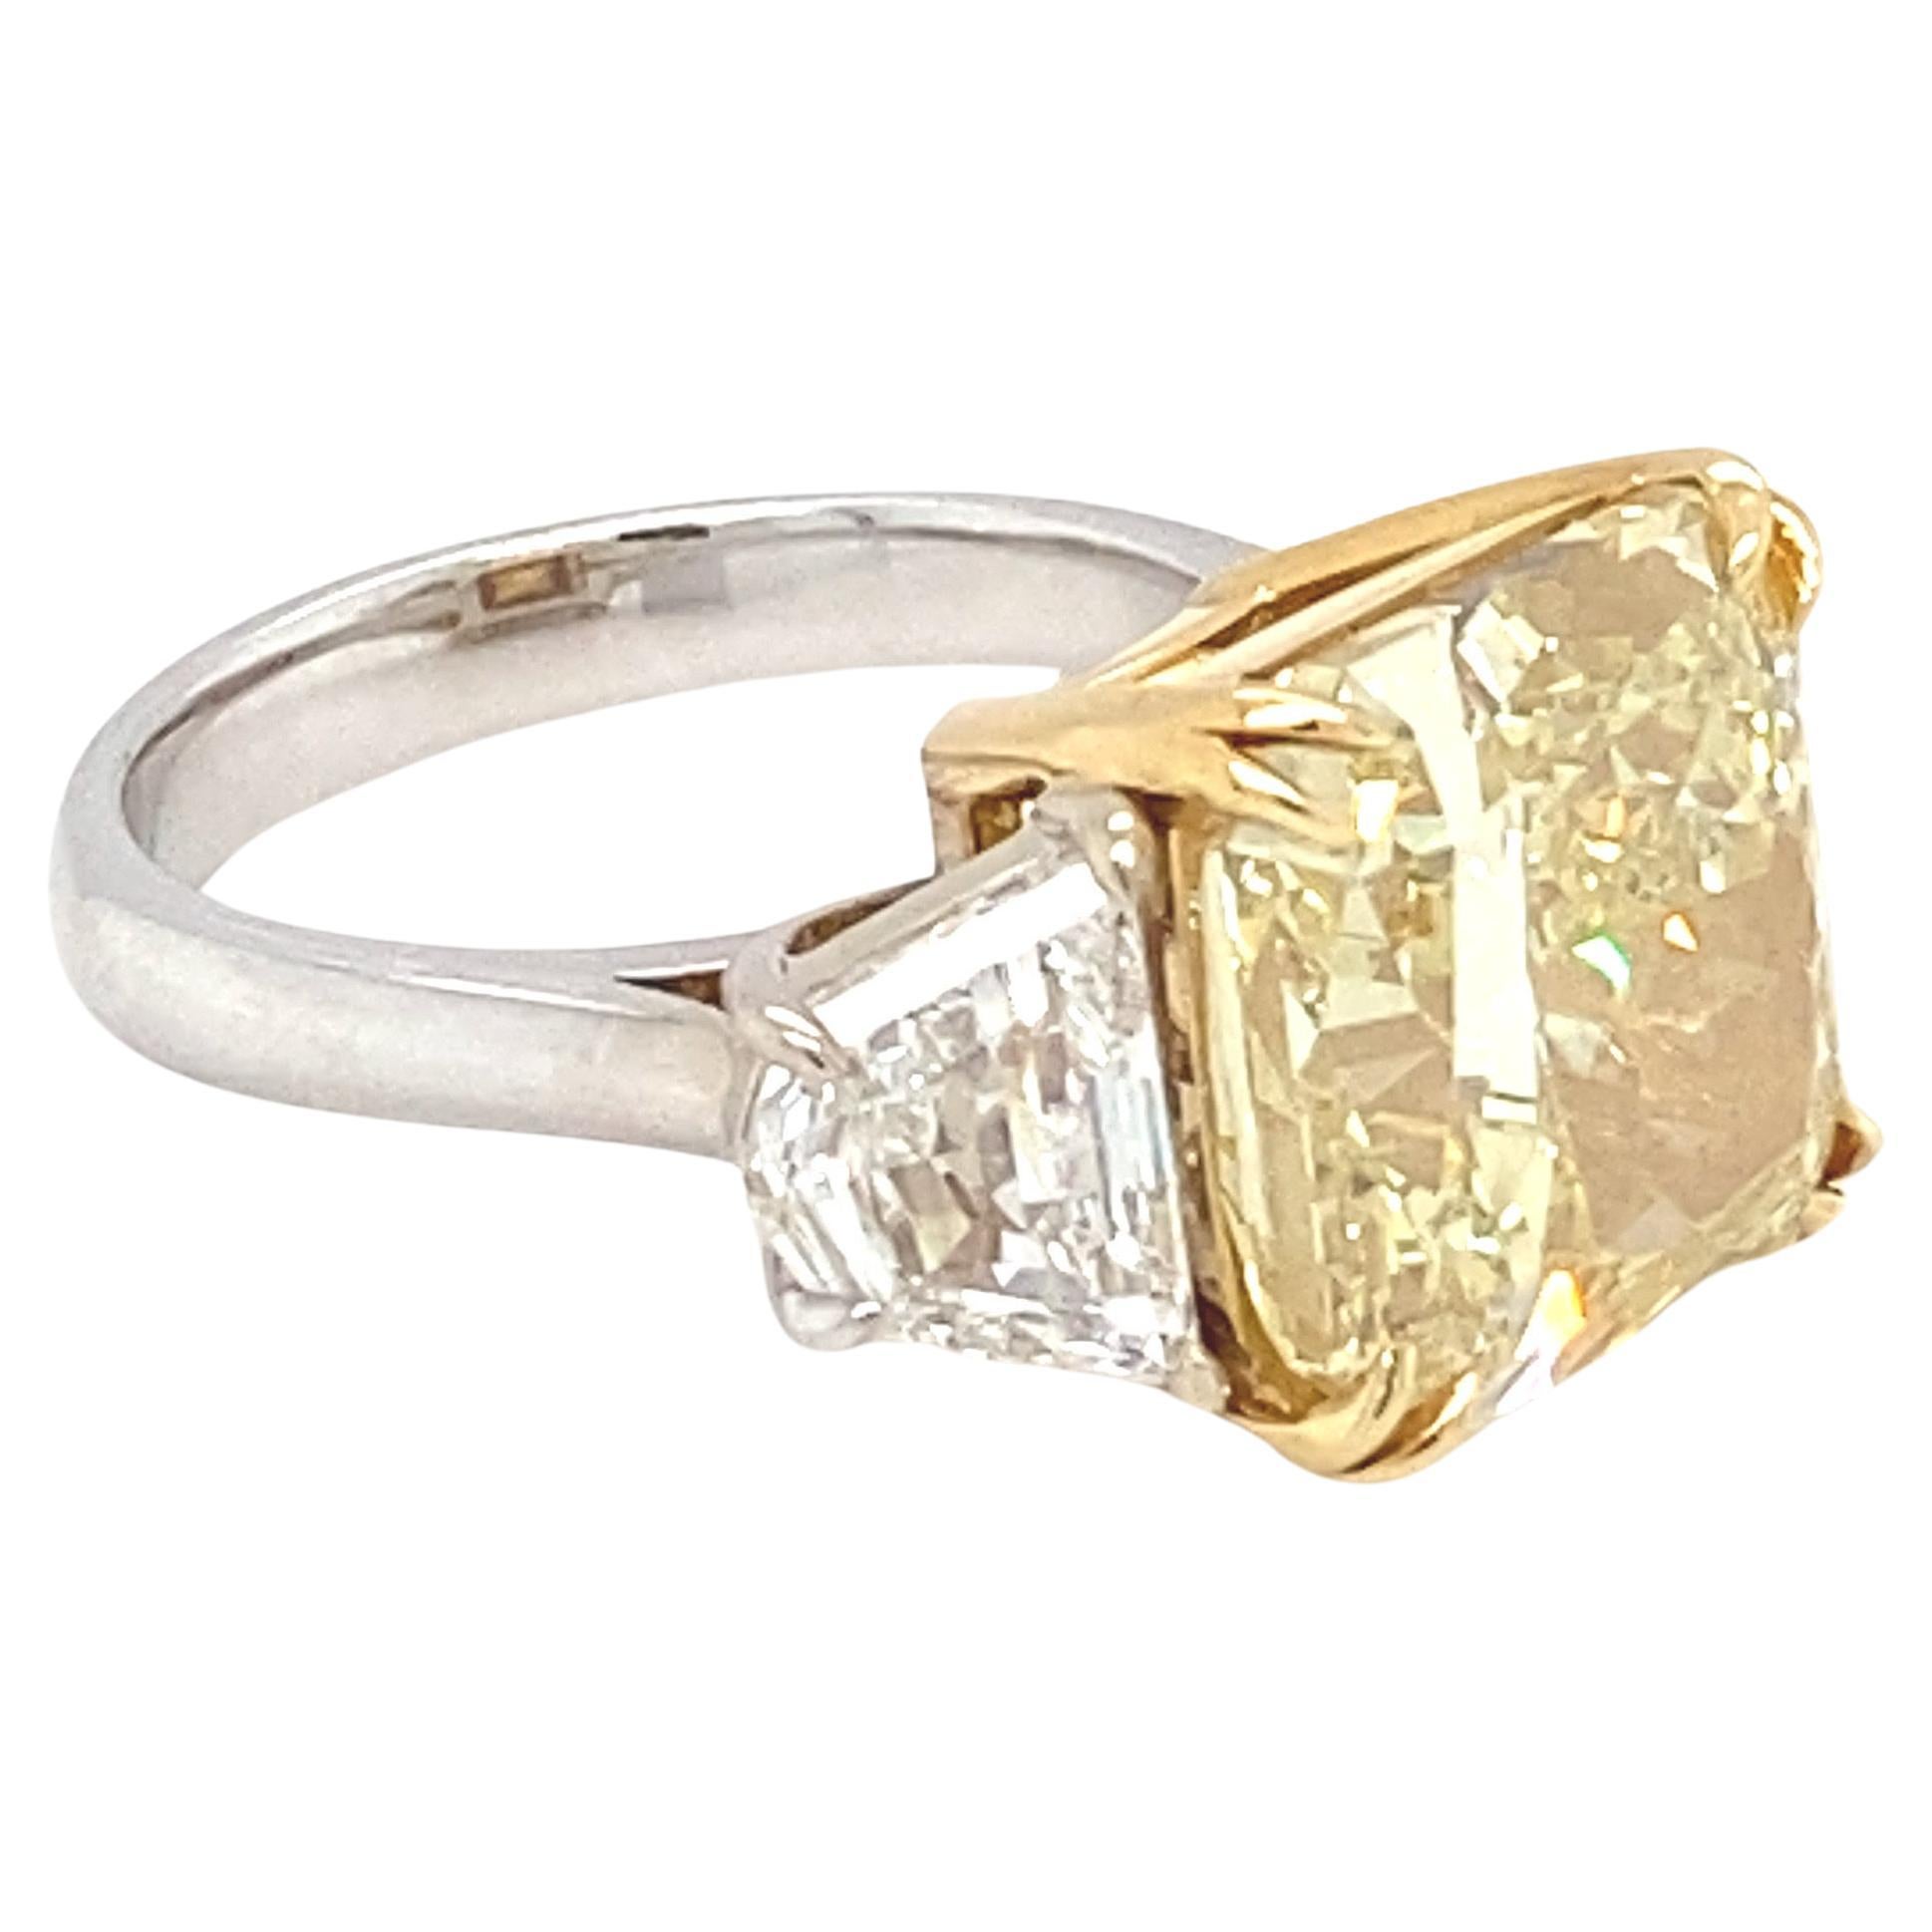 GIA-zertifizierter Verlobungsring mit 10,03 Karat intensiv gelbem Fancy-Diamant im Kissenschliff